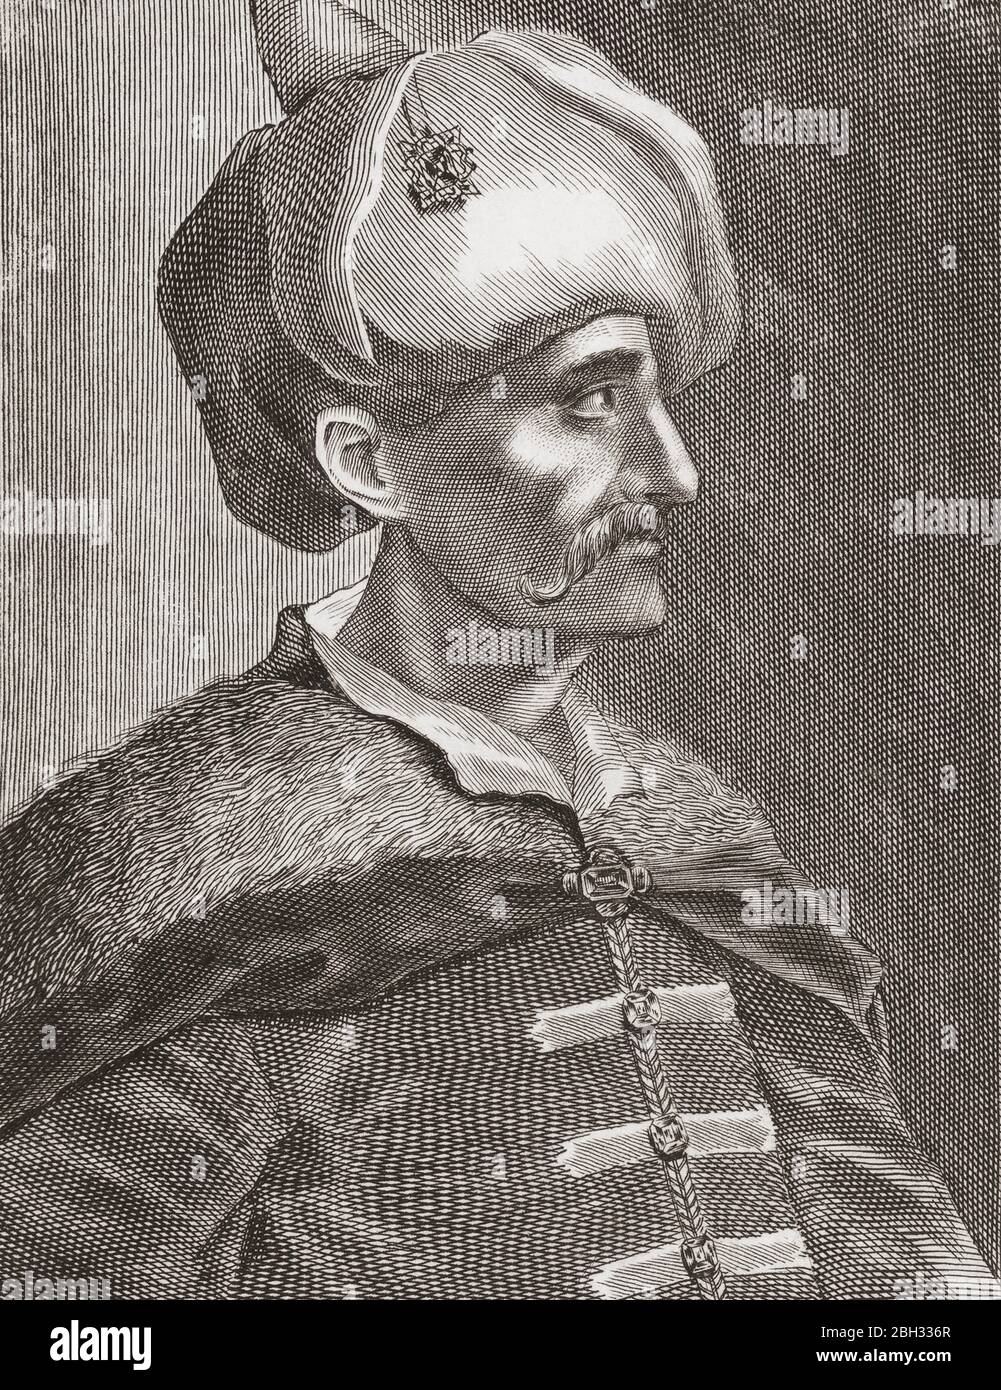 Ahmed I., 1590 - 1617. Sultan des Osmanischen Reiches. Nach einem Stich eines unbekannten Künstlers aus dem 18. Jahrhundert. Stockfoto